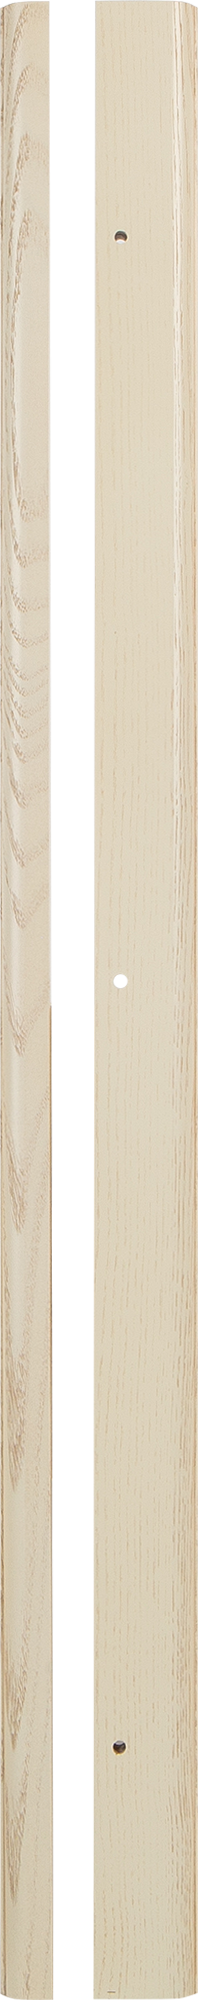 82180029 Угол для напольного шкафа 4x76.5 см массив ясеня цвет кремовый Невель STLM-0021296 DELINIA ID